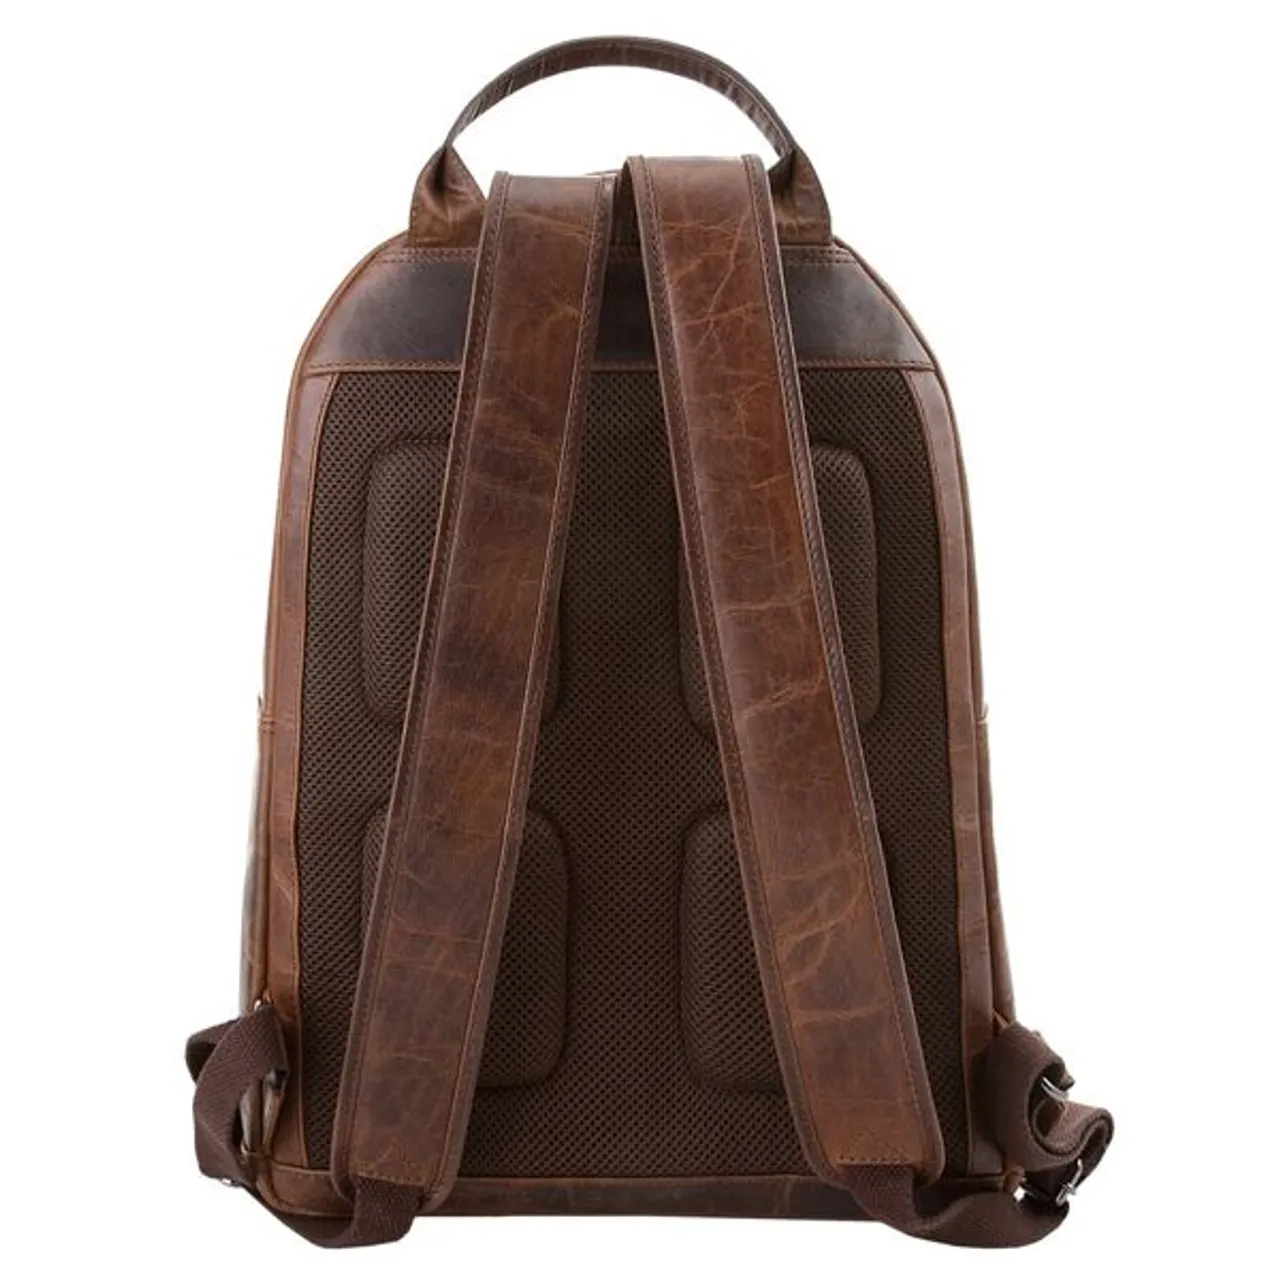 Laptoprucksack X-ZONE Gr. B/H/T: 43 cm x 29 cm x 12 cm, braun (cognac) Rucksäcke Taschen